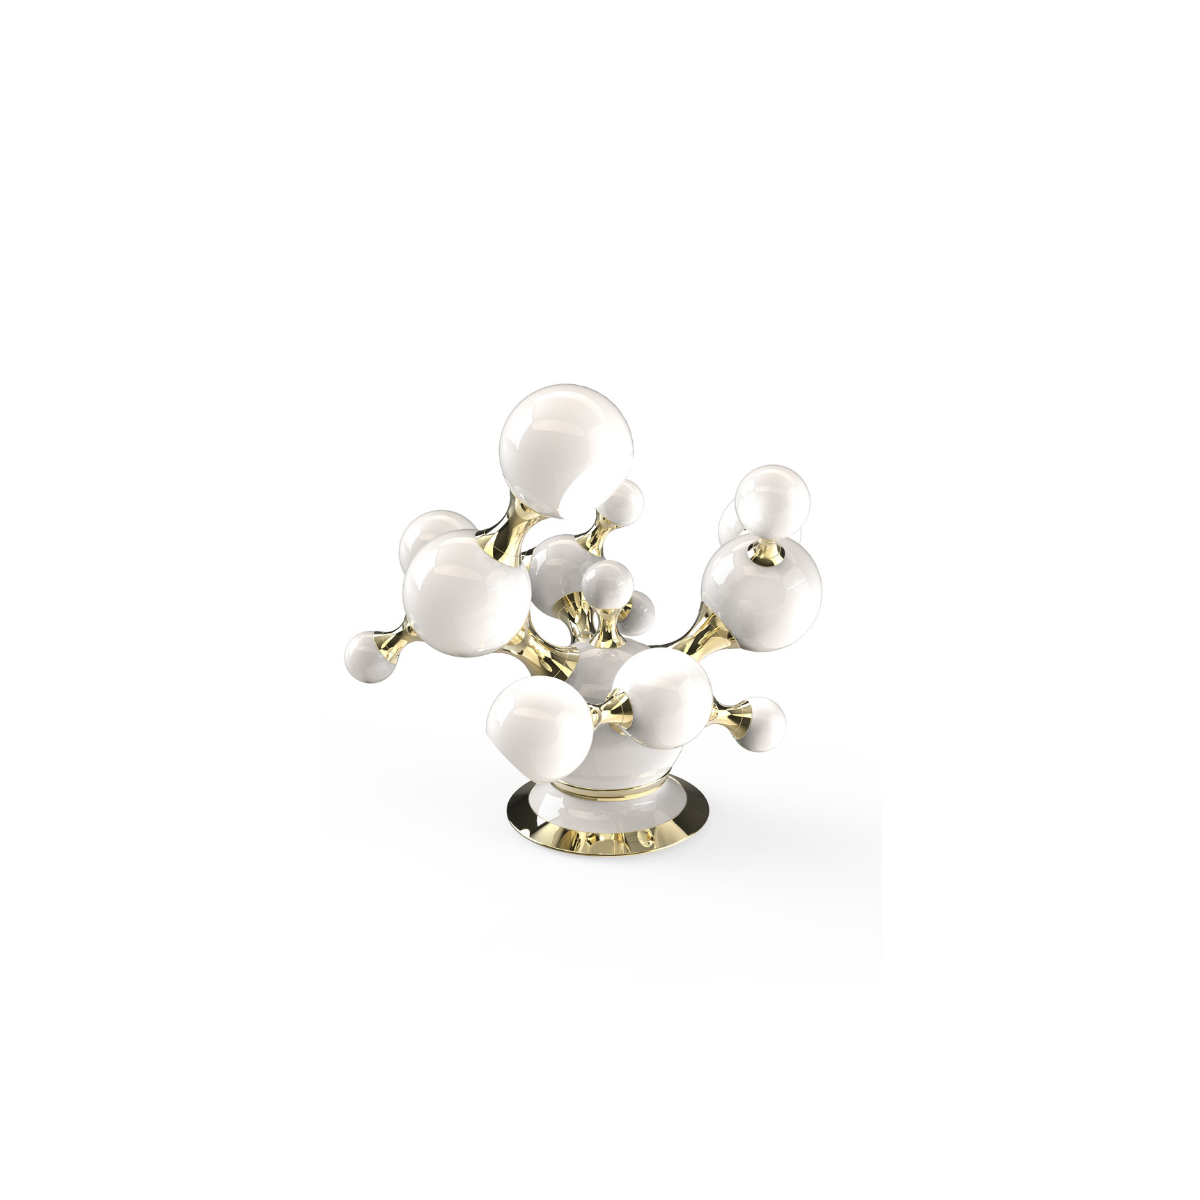 atomic-tablelamp-by delightfull-covetlighting (4)